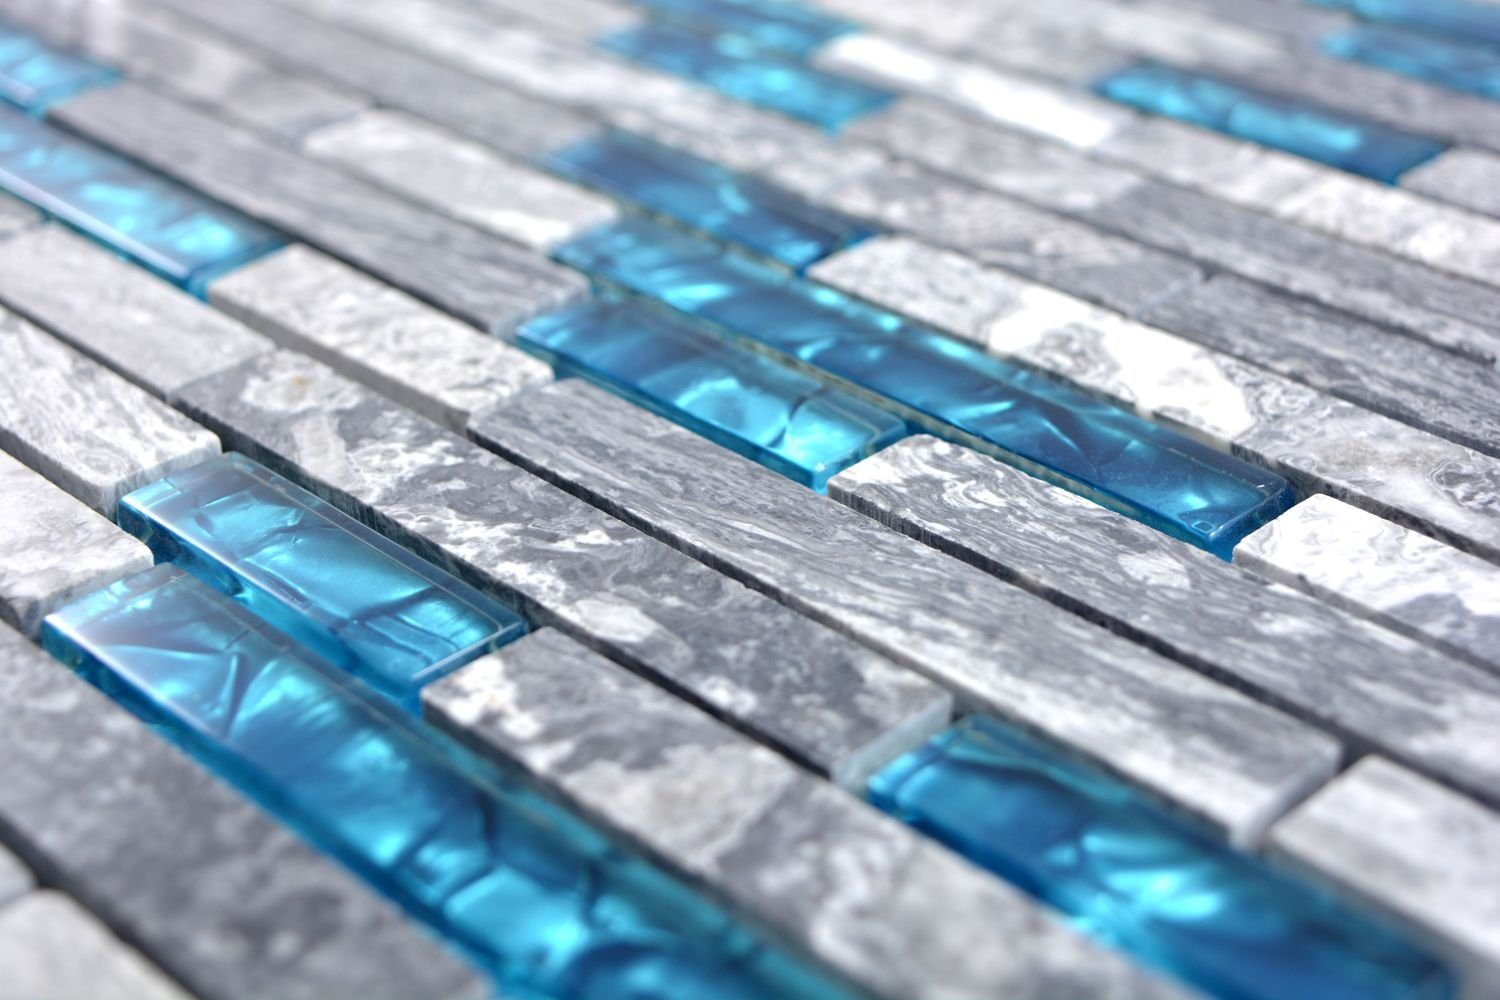 Mosani Wandfliese 0,87m² Mosaikfliesen Naturstein Grau Wandverkleidung Glasmosik Marmor Blau, 10-teillig, Fliesen Dekorative Set